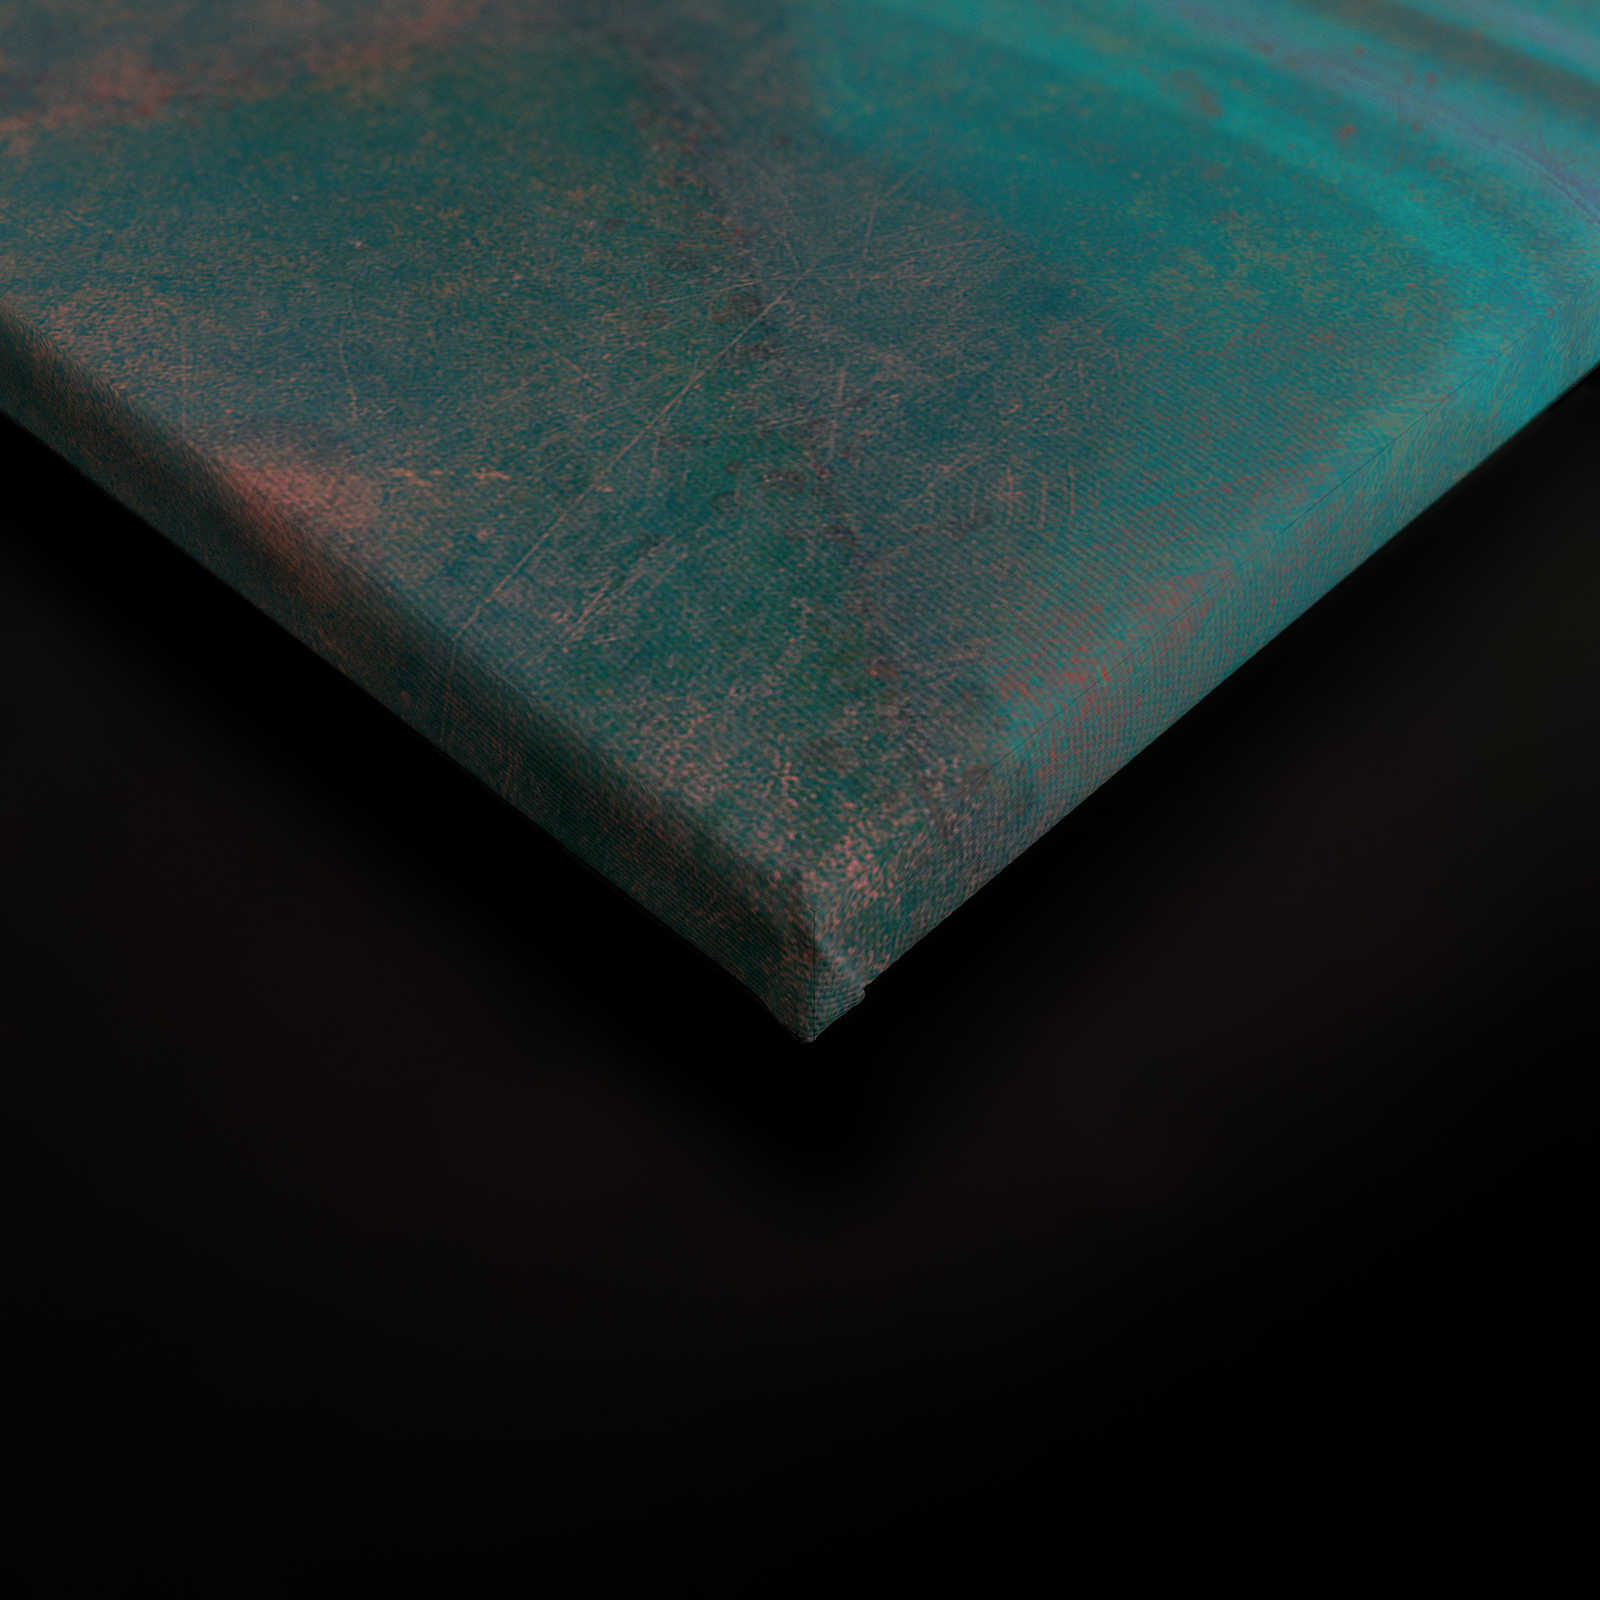             Marmer 3 - Canvas schilderij met krasstructuur in kleurrijke marmerlook als highlight - 0,90 m x 0,60 m
        